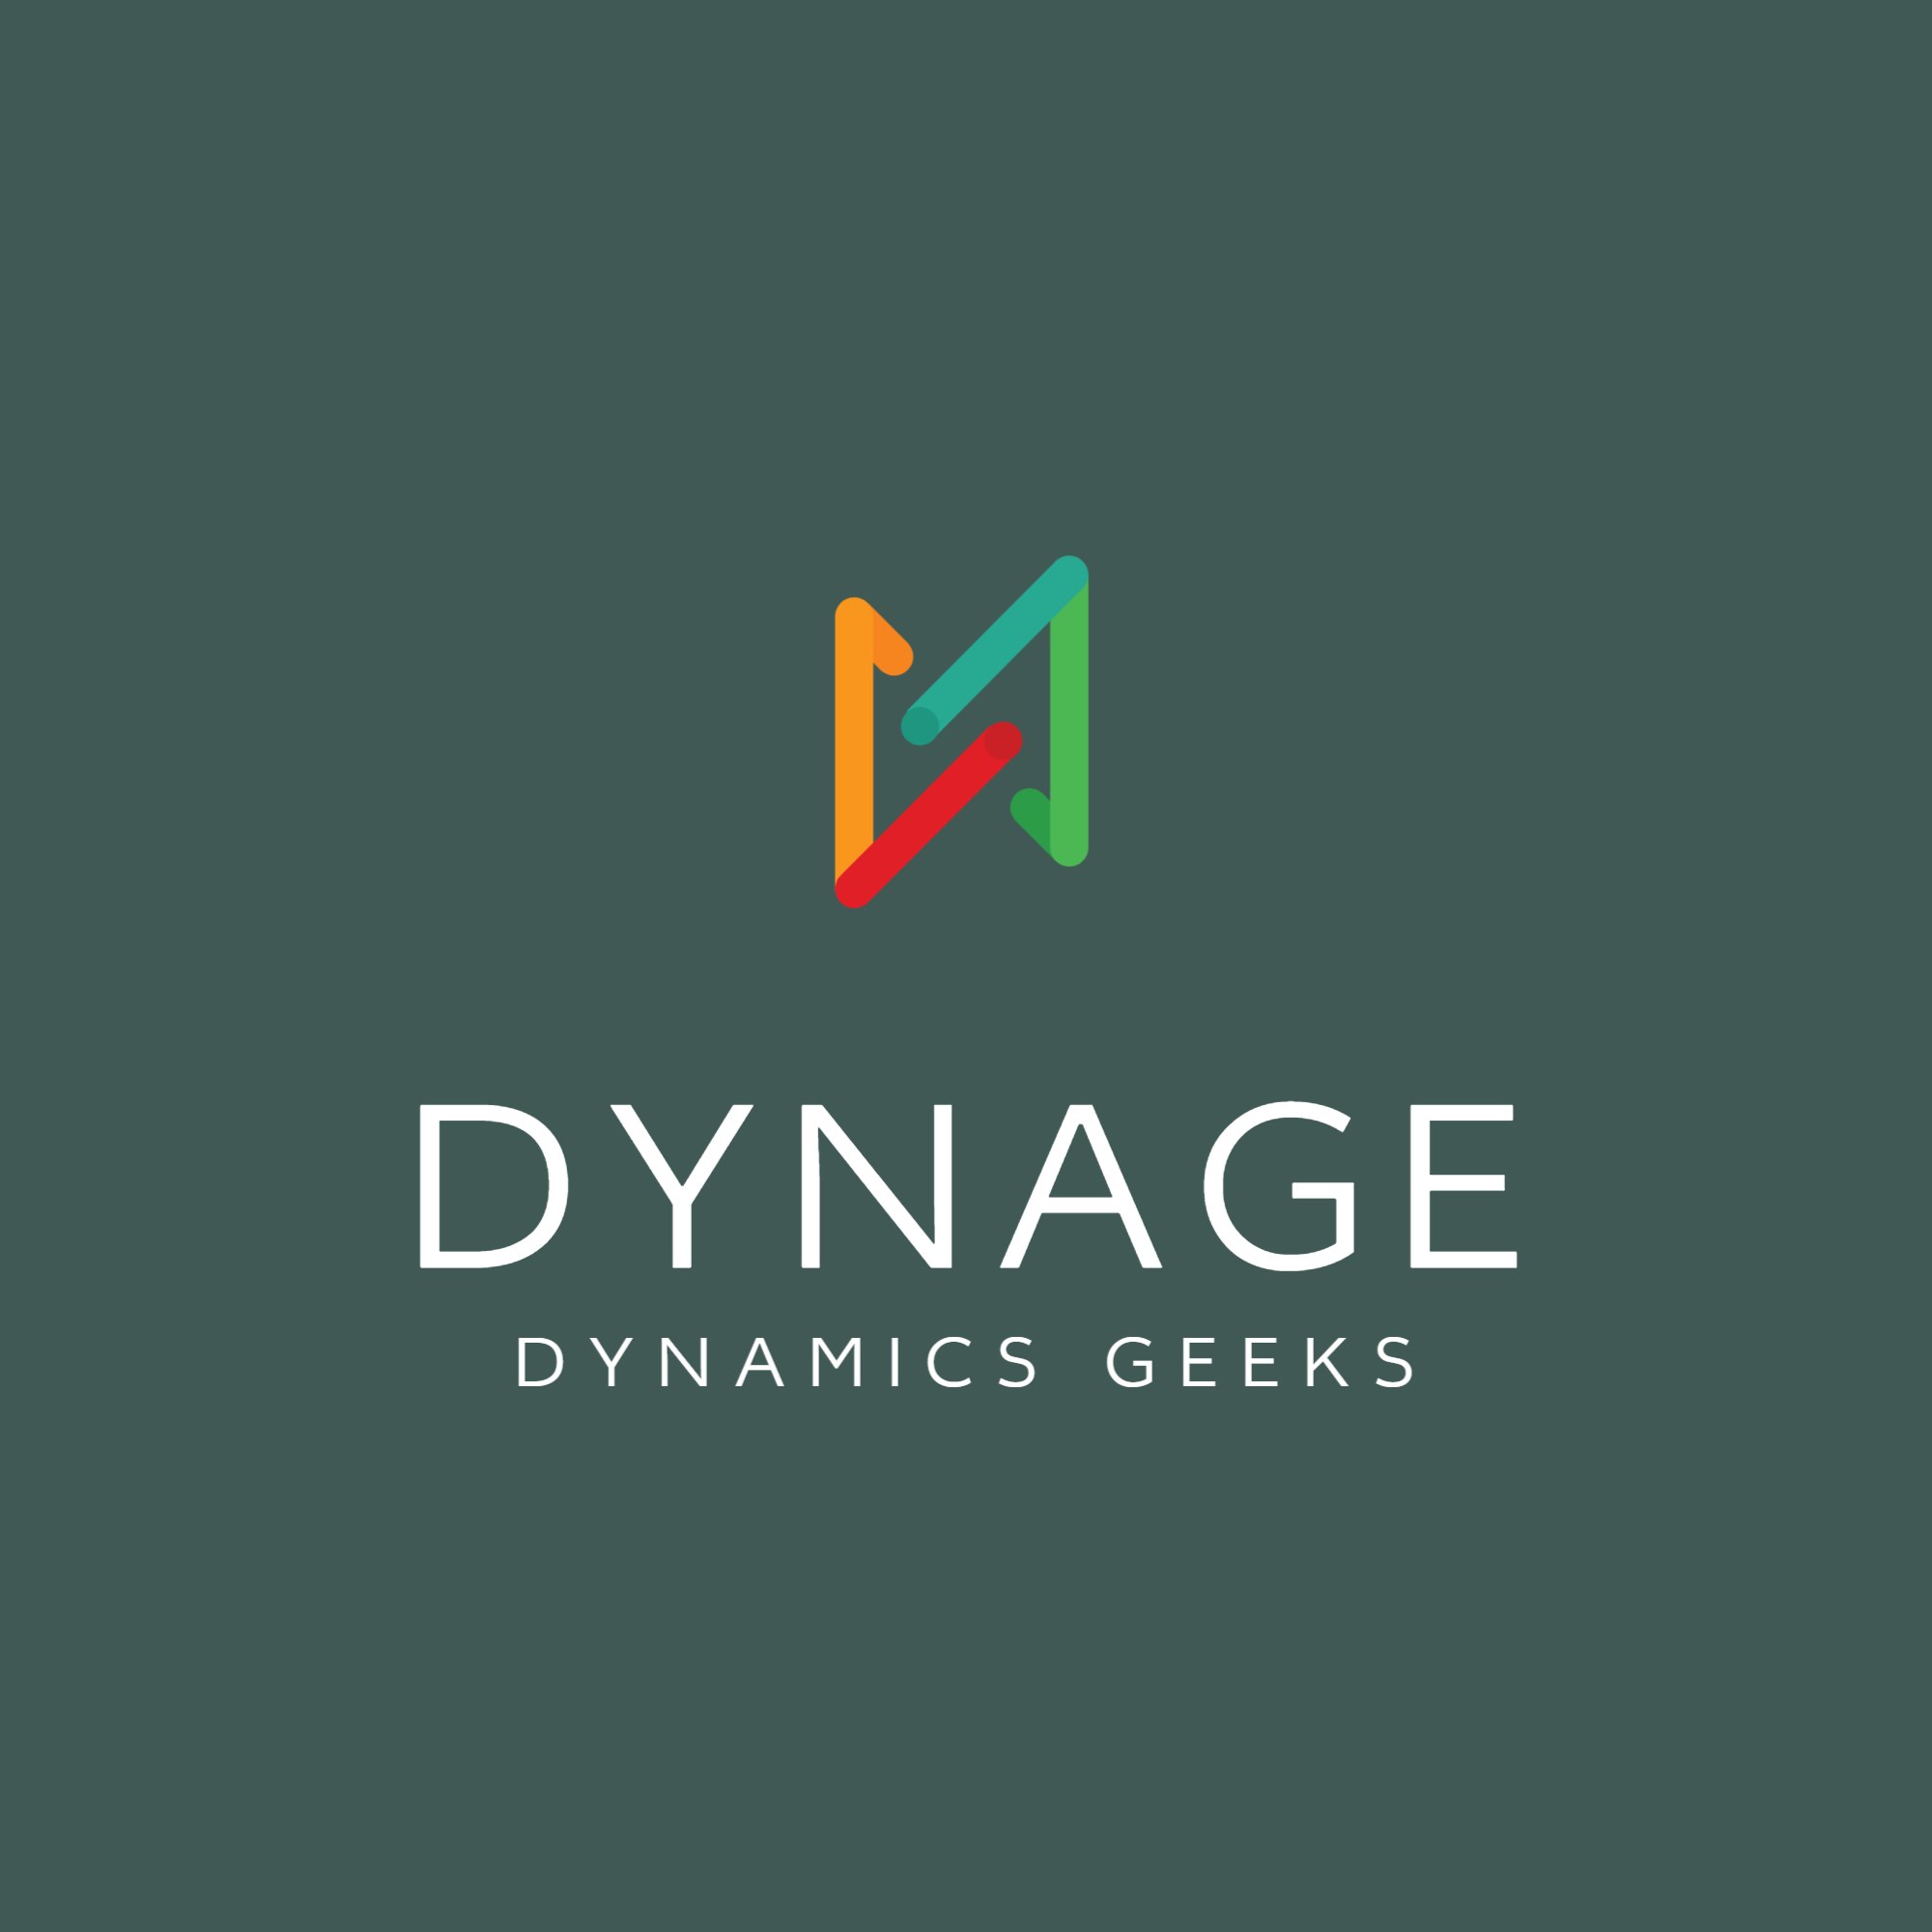 Dynage